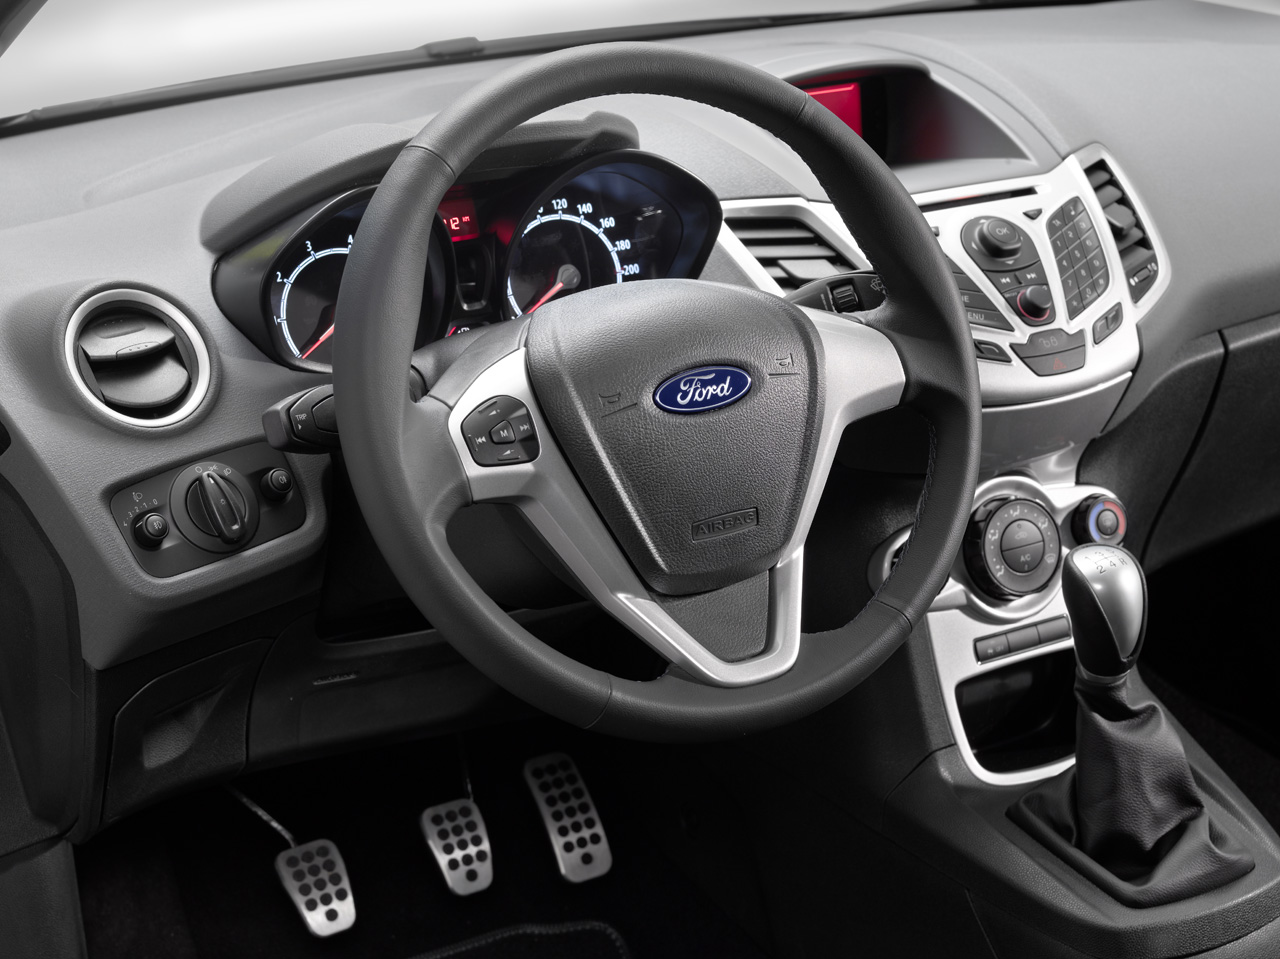 Spesifikasi Ford Fiesta Hatchback 2013 Dan Harga Terbaru